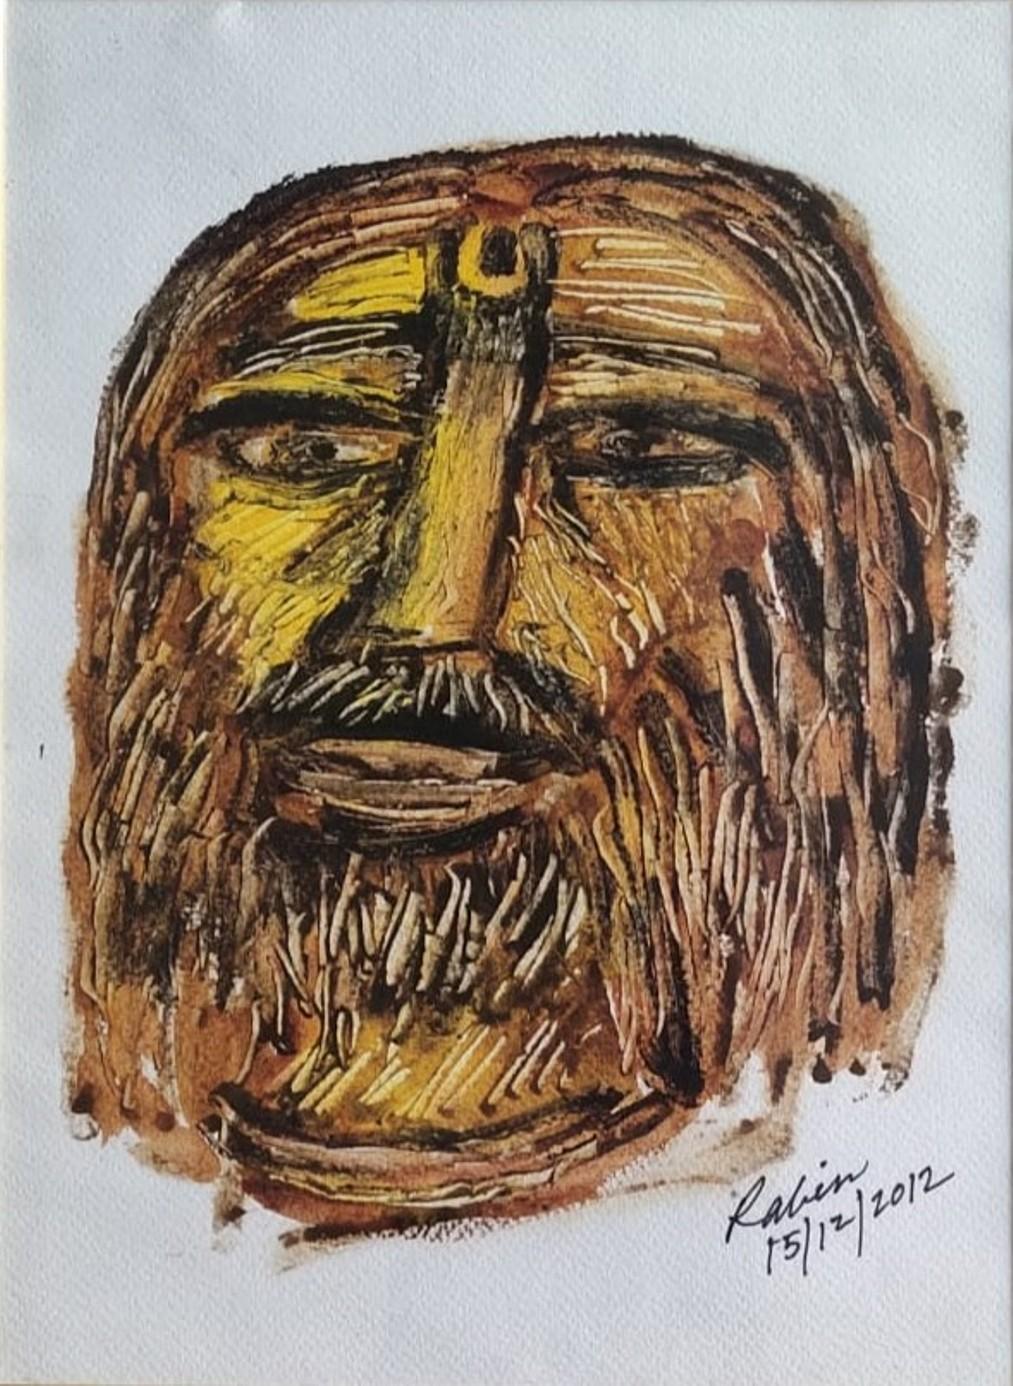 Face, acrylique sur papier de l'artiste indien moderne Rabin Mondal en stock